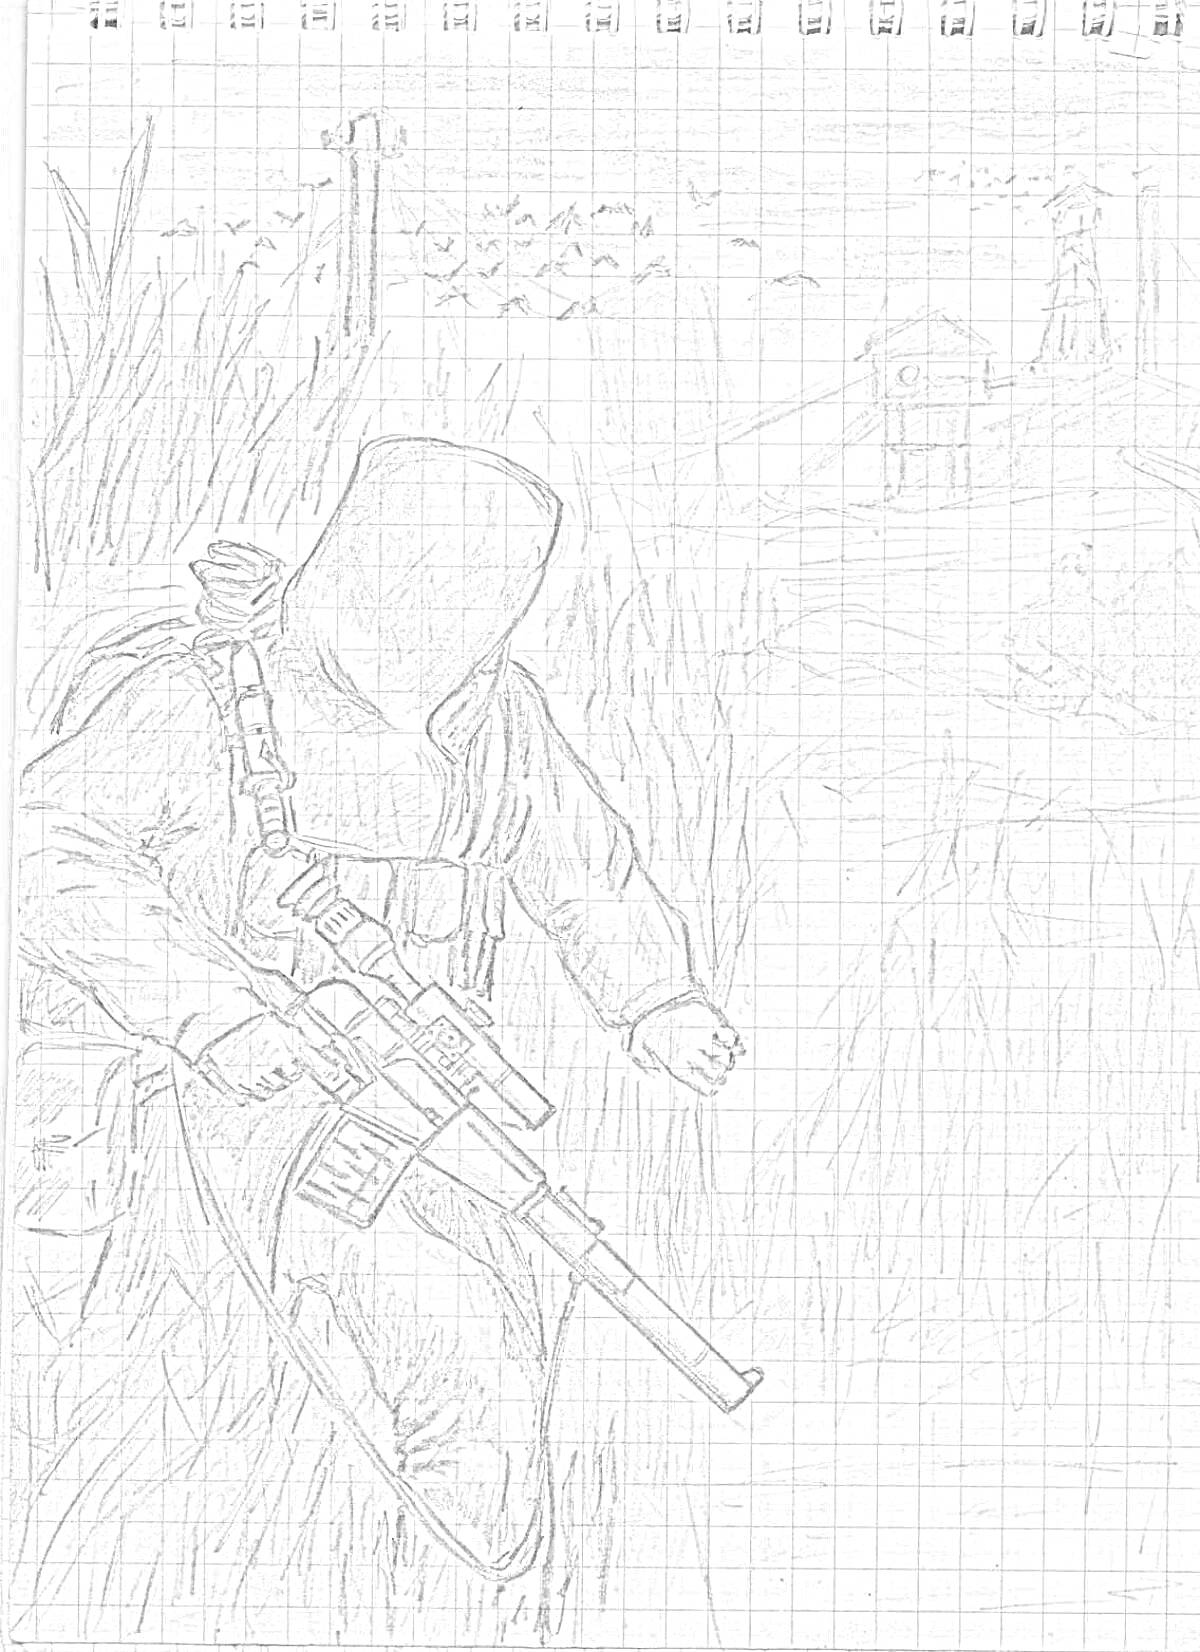 Сталкер в засаде с винтовкой, пейзаж с разрушенными строениями, крестом и стаей птиц